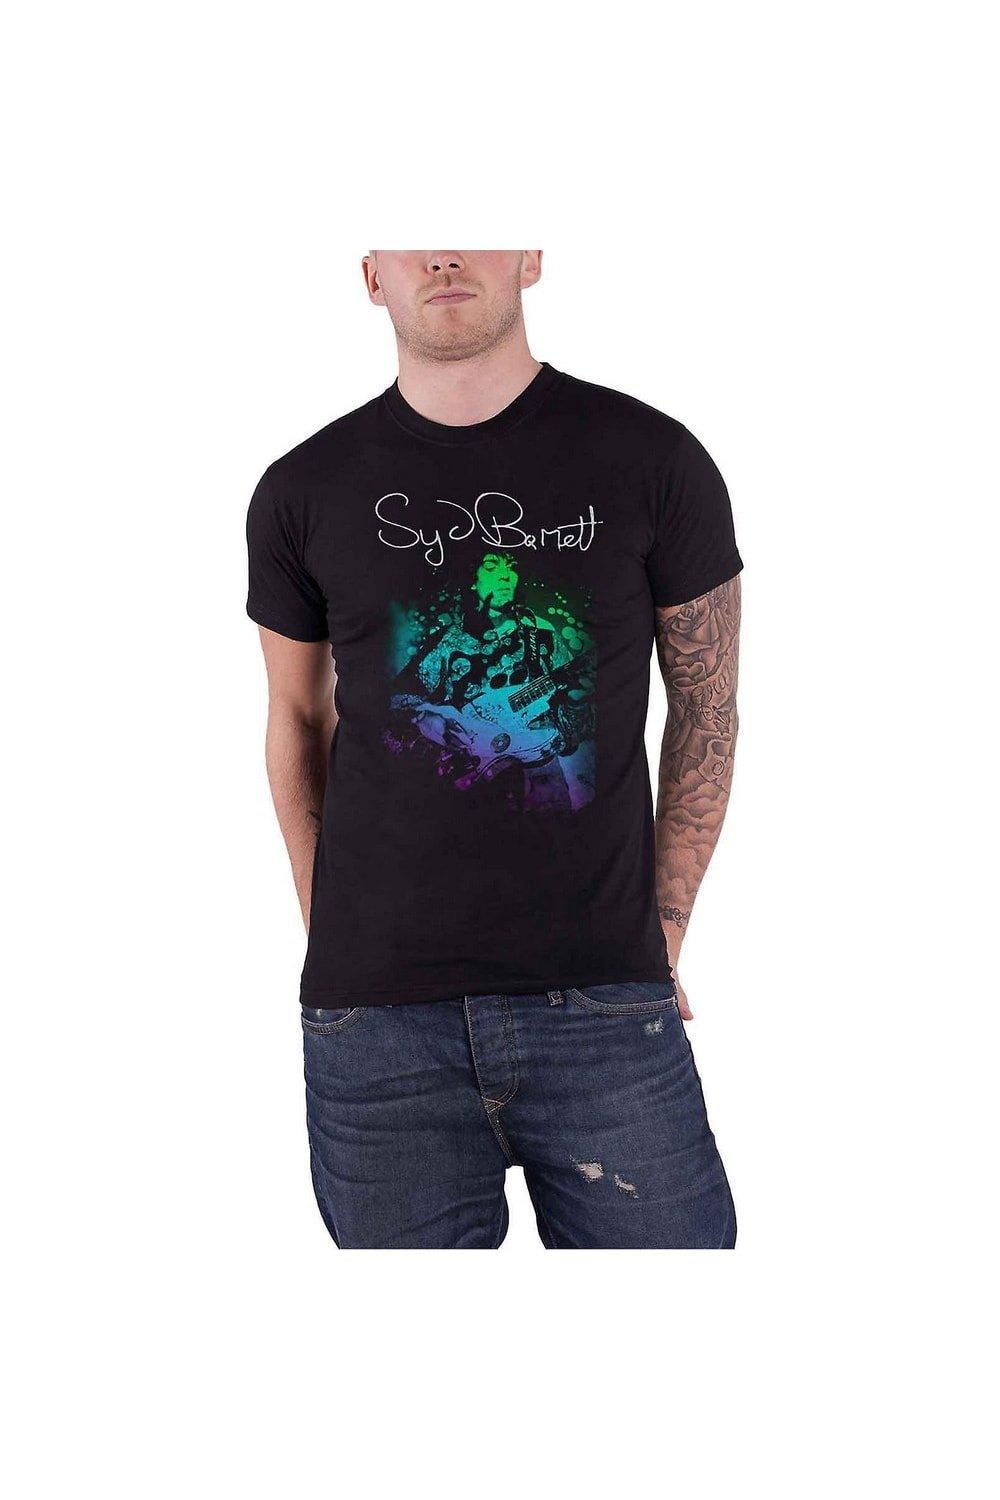 Психоделическая хлопковая футболка Syd Barrett, черный syd barrett syd barrett an introduction to syd barrett 2 lp